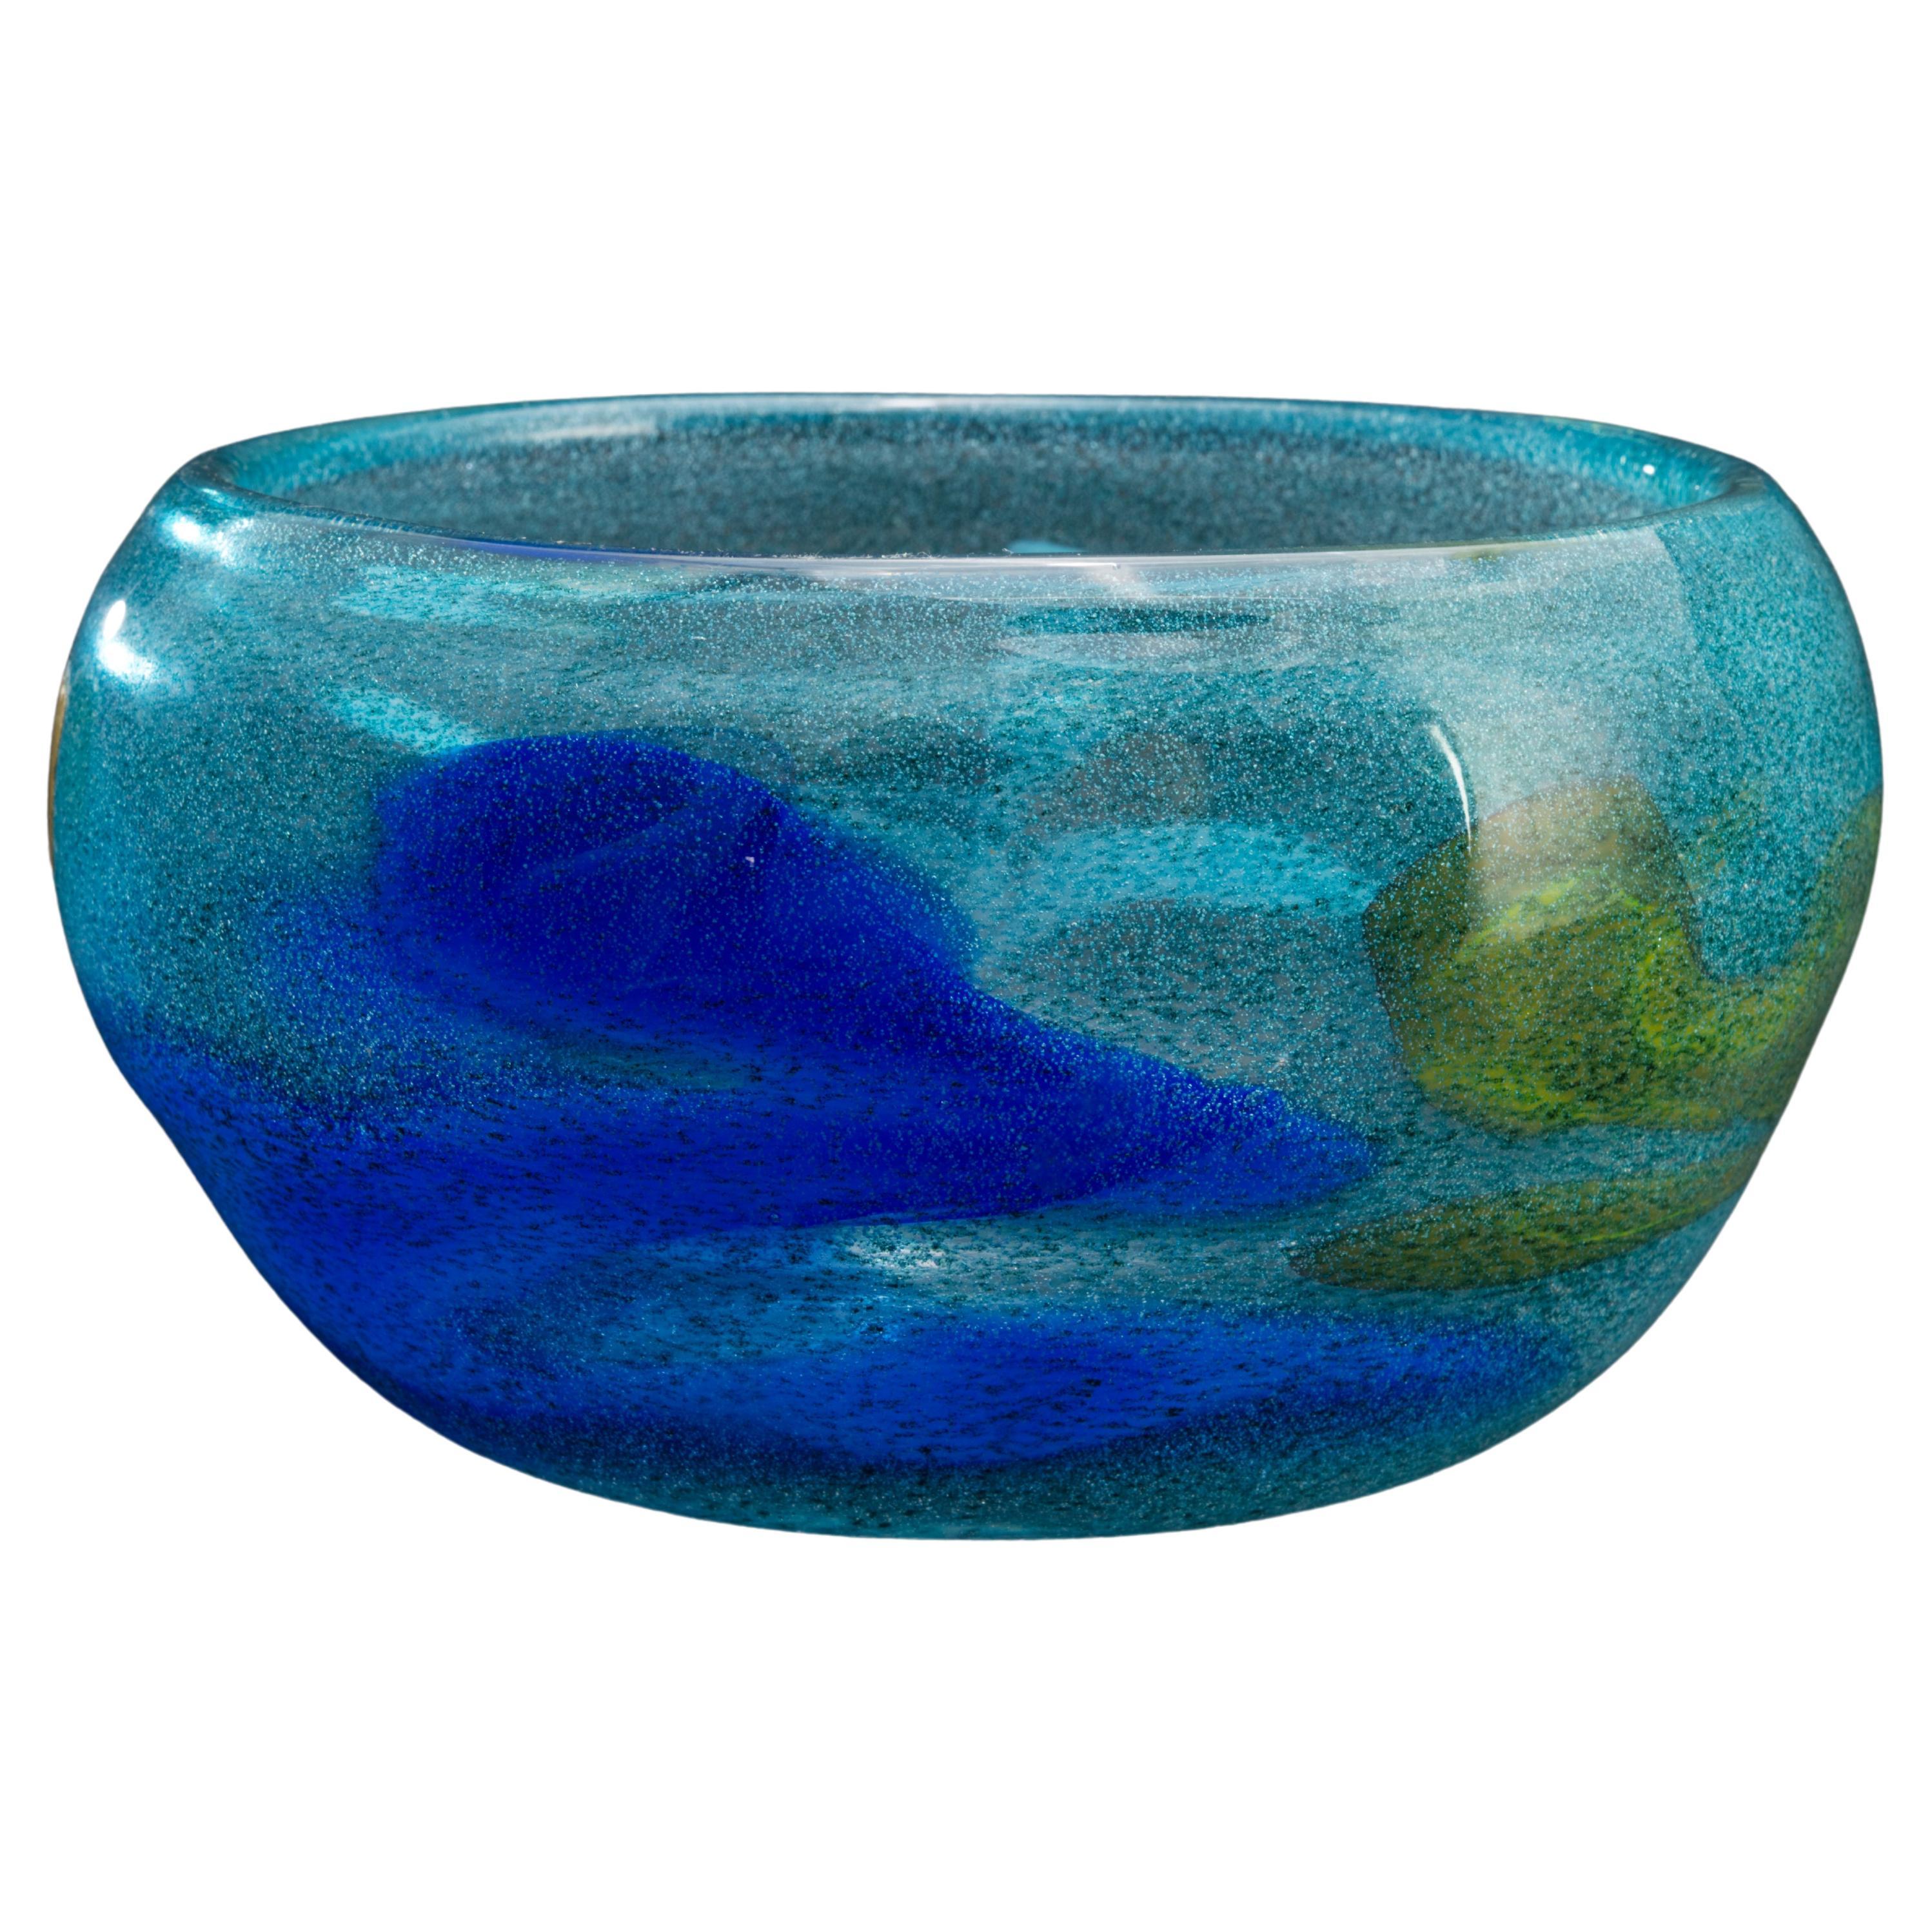 Bengt Orup for Johansfors Sweden Modernist Blue Art Glass Vase